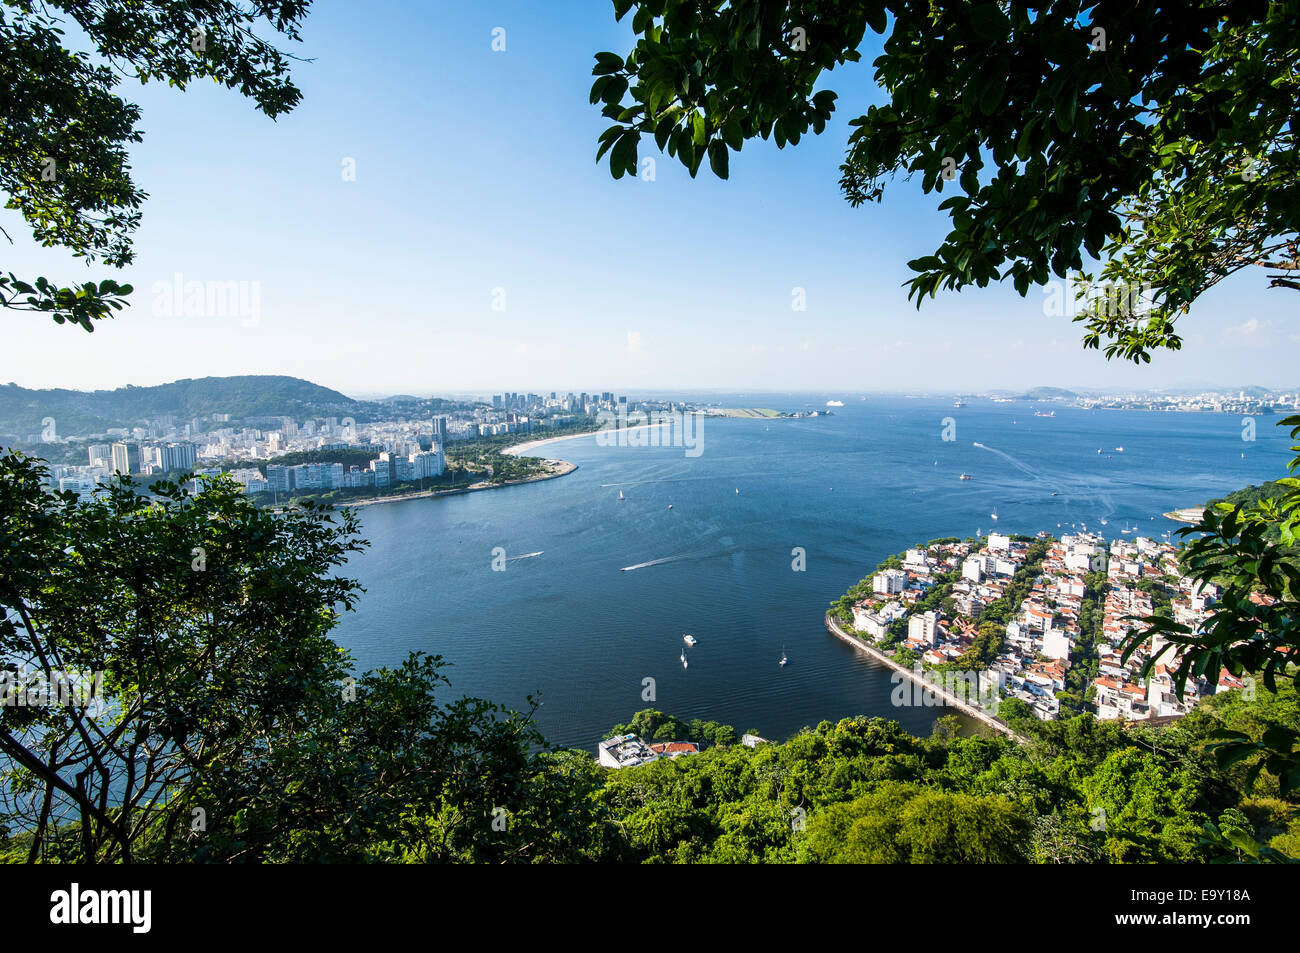 View from the Sugarloaf Mountain or Pão de Açúcar over Rio de Janeiro, Brazil Stock Photo